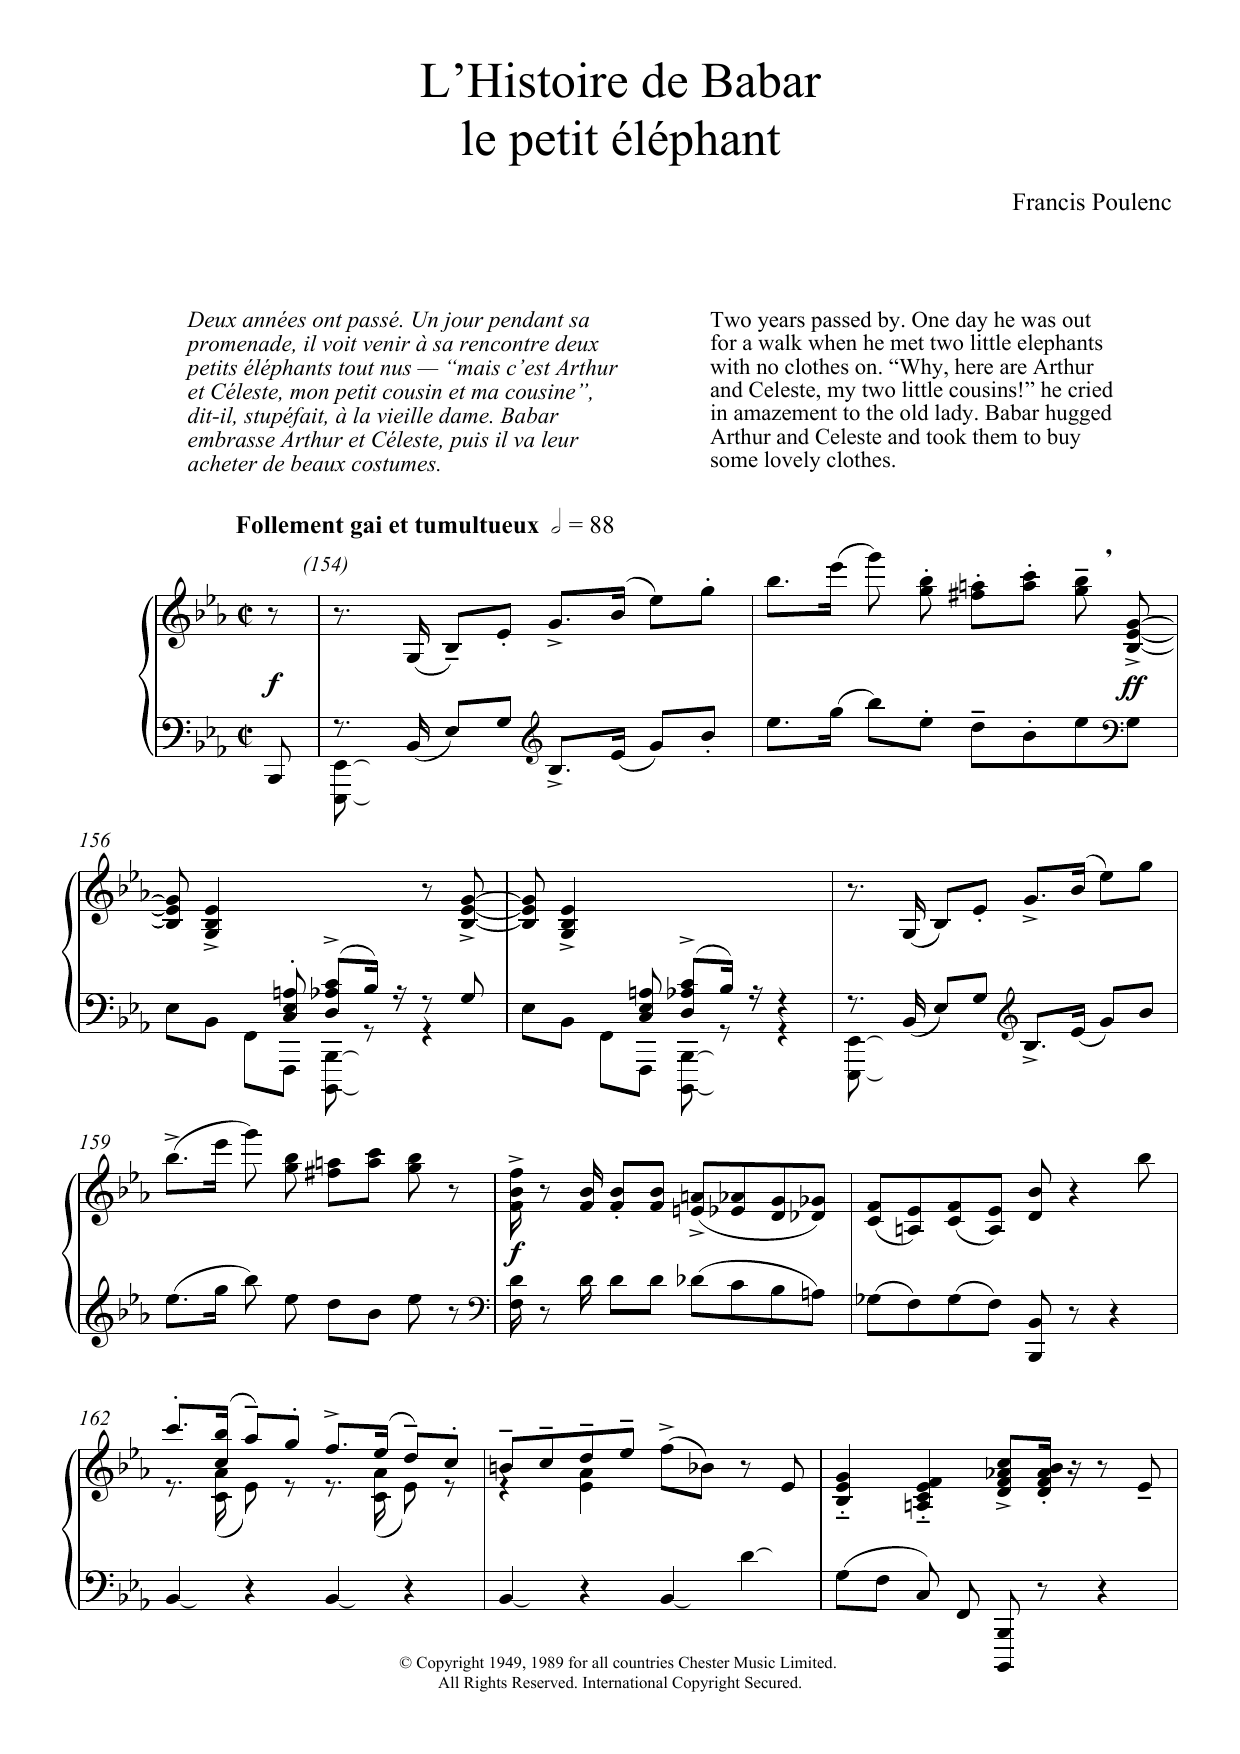 Download Francis Poulenc L'Histoire De Babar Sheet Music